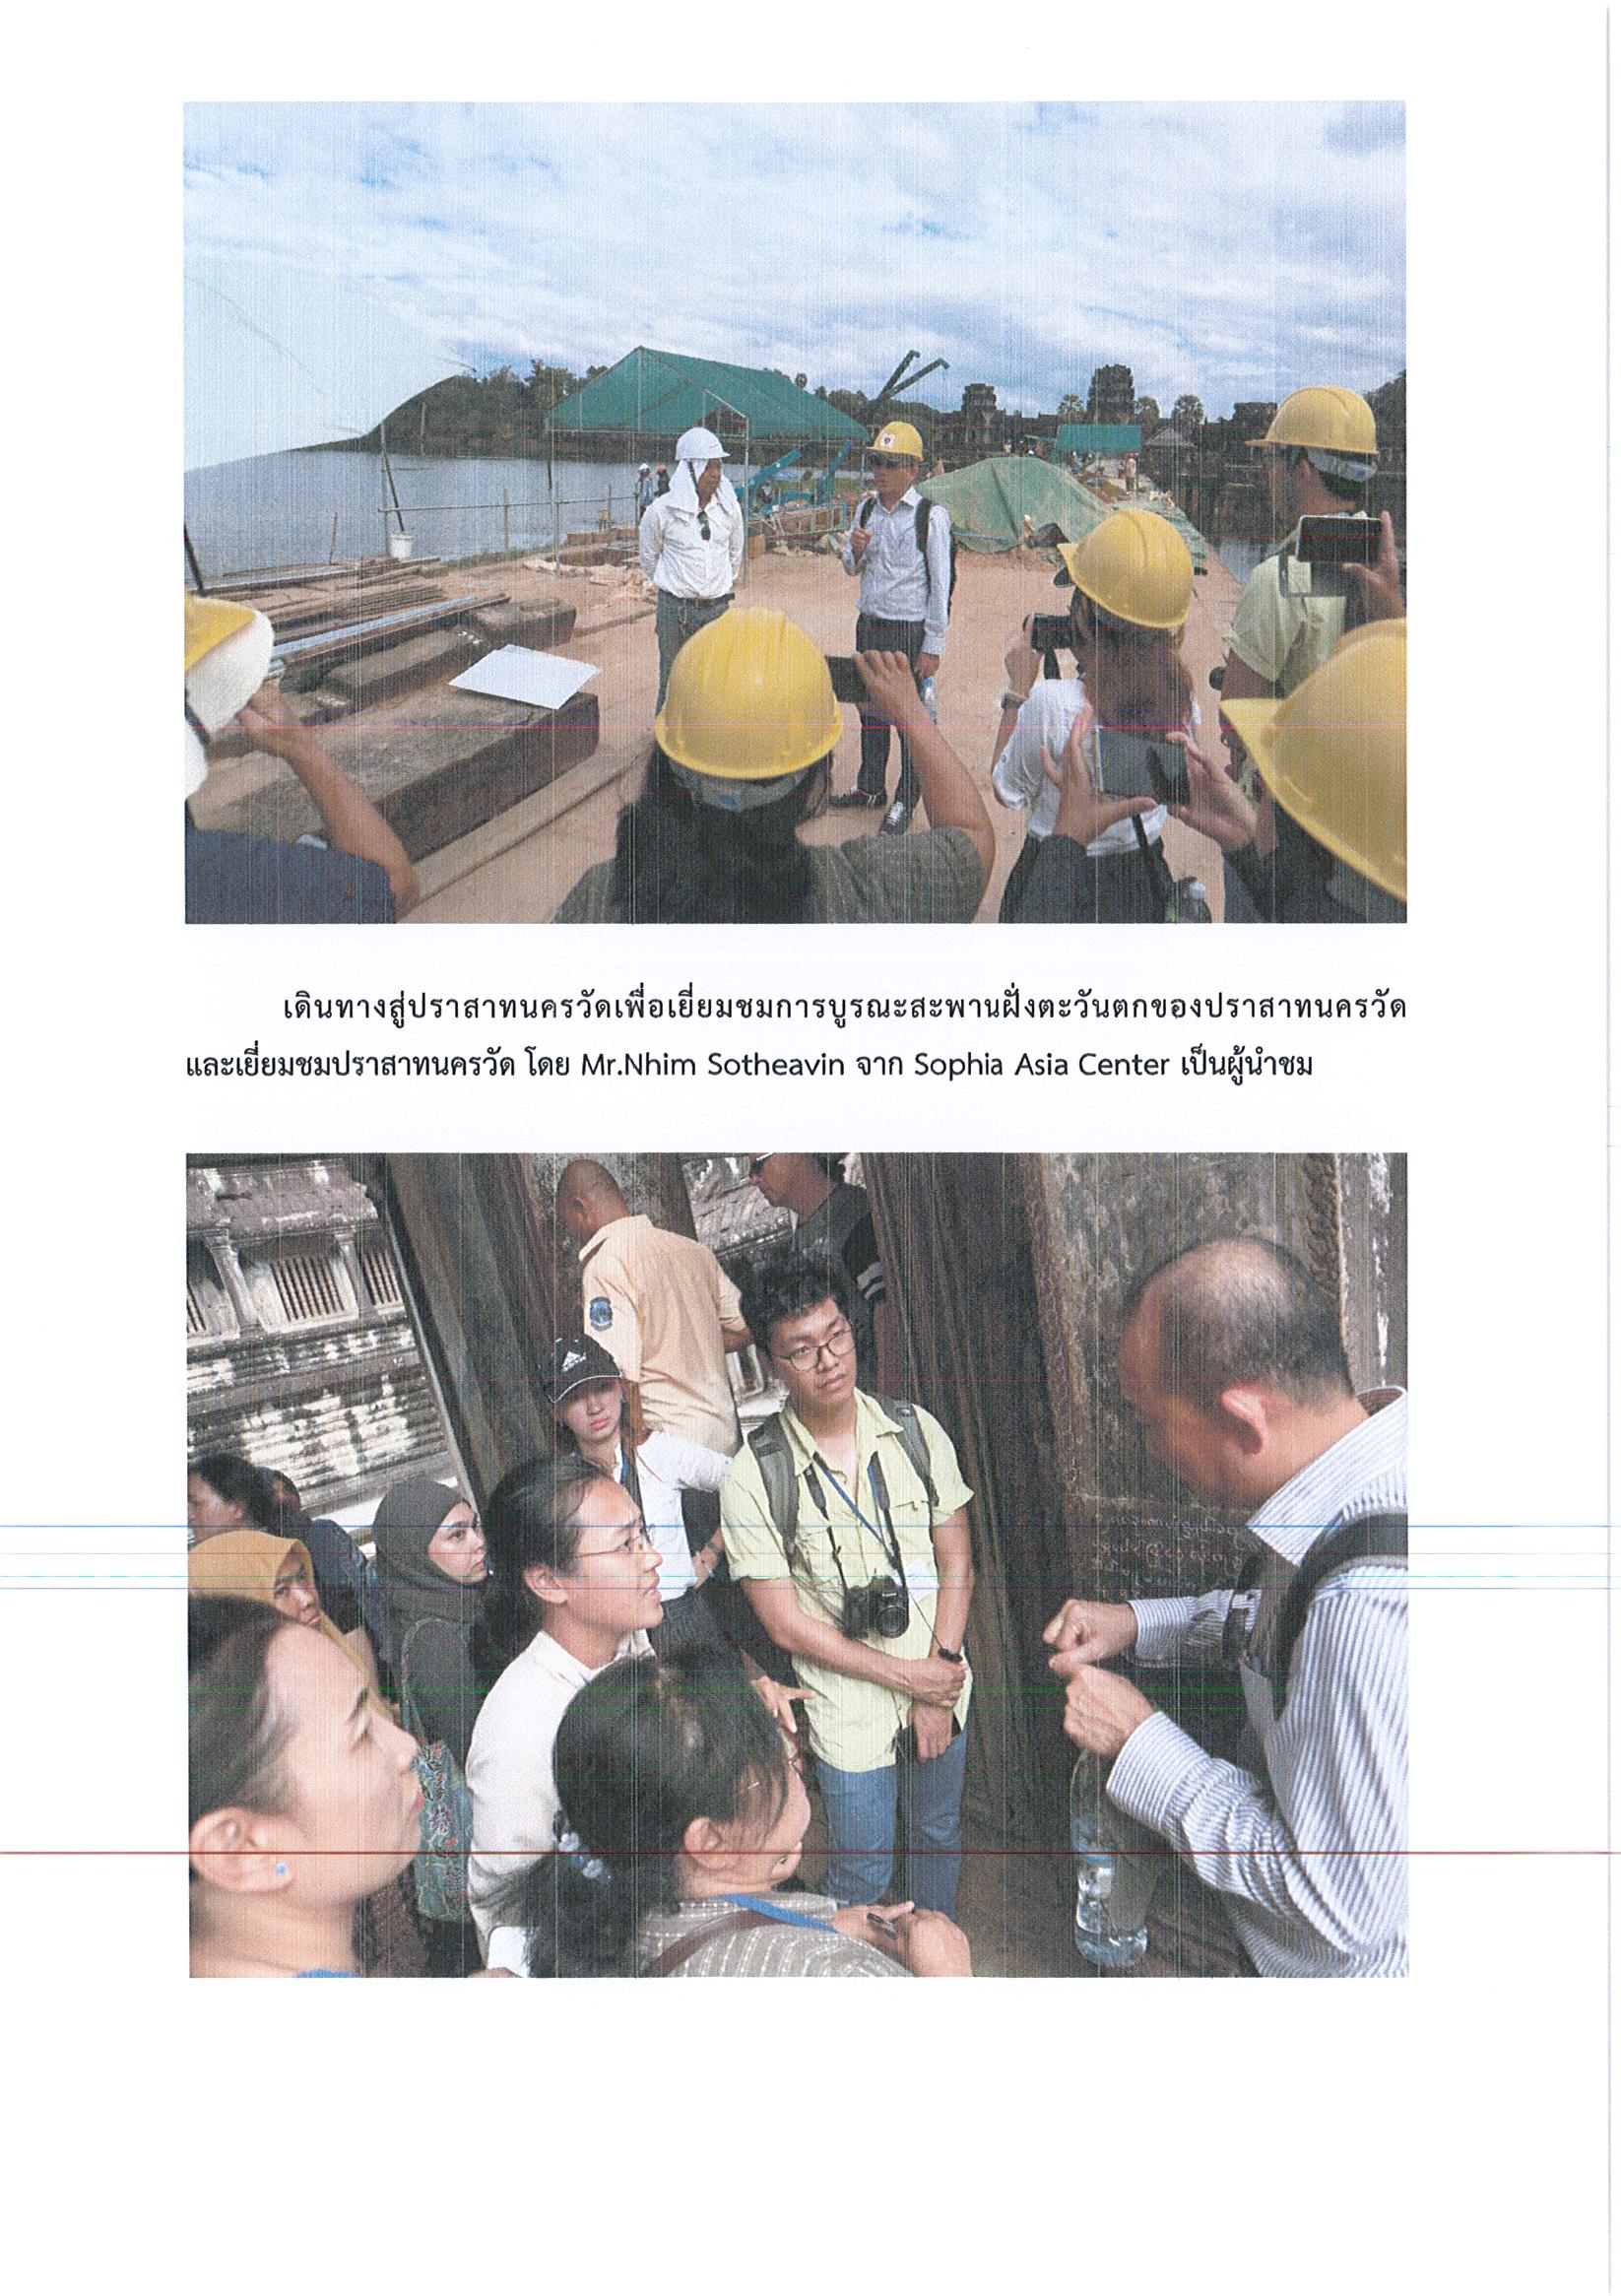 รายงานการเดินทางไปราชการ ณ ราชอาณาจักรกัมพูชา ระหว่างวันที่ 25 พฤศจิกายน – 2 ธันวาคม 2562 โครงการประชุมเชิงปฏิบัติการนานาชาติ ASEAN 2019: Cultural Properties and Museums Workshop